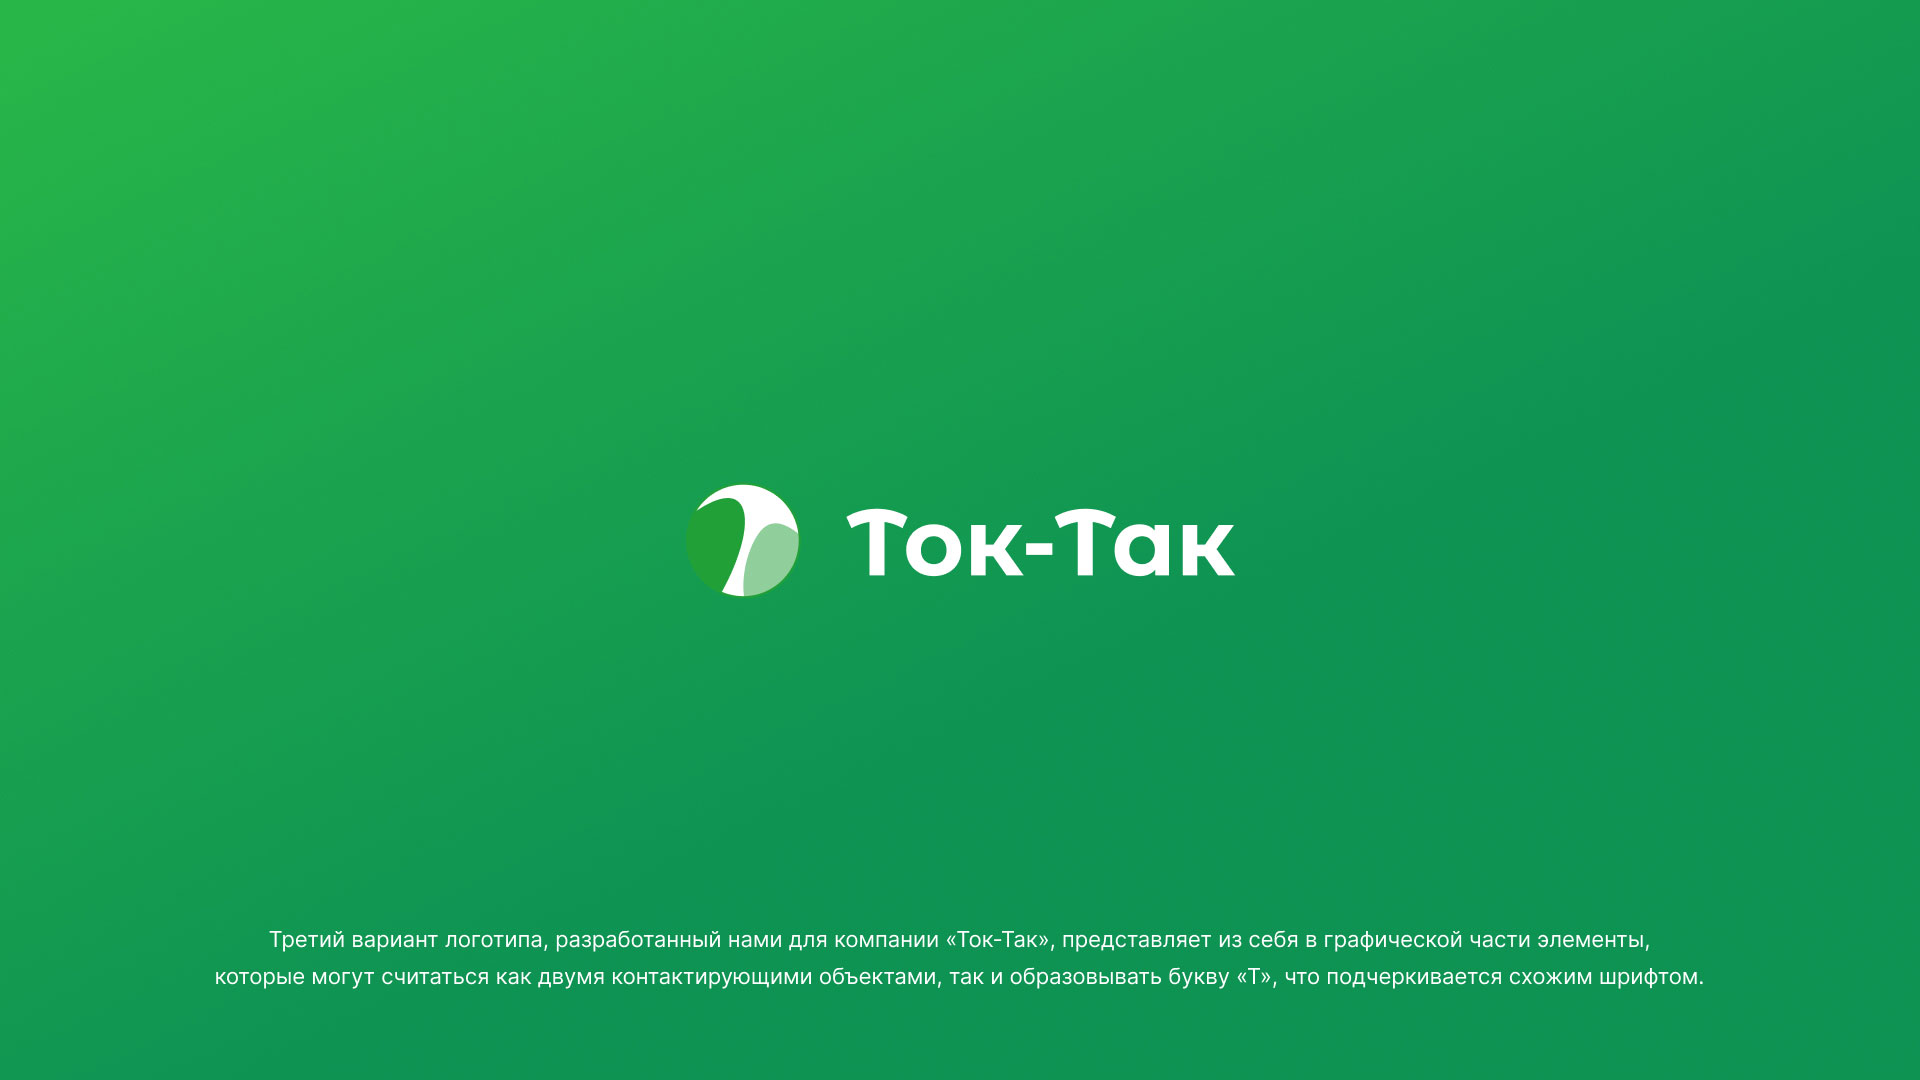 Разработка логотипа аутсорсинговой компании «Ток-Так» в 